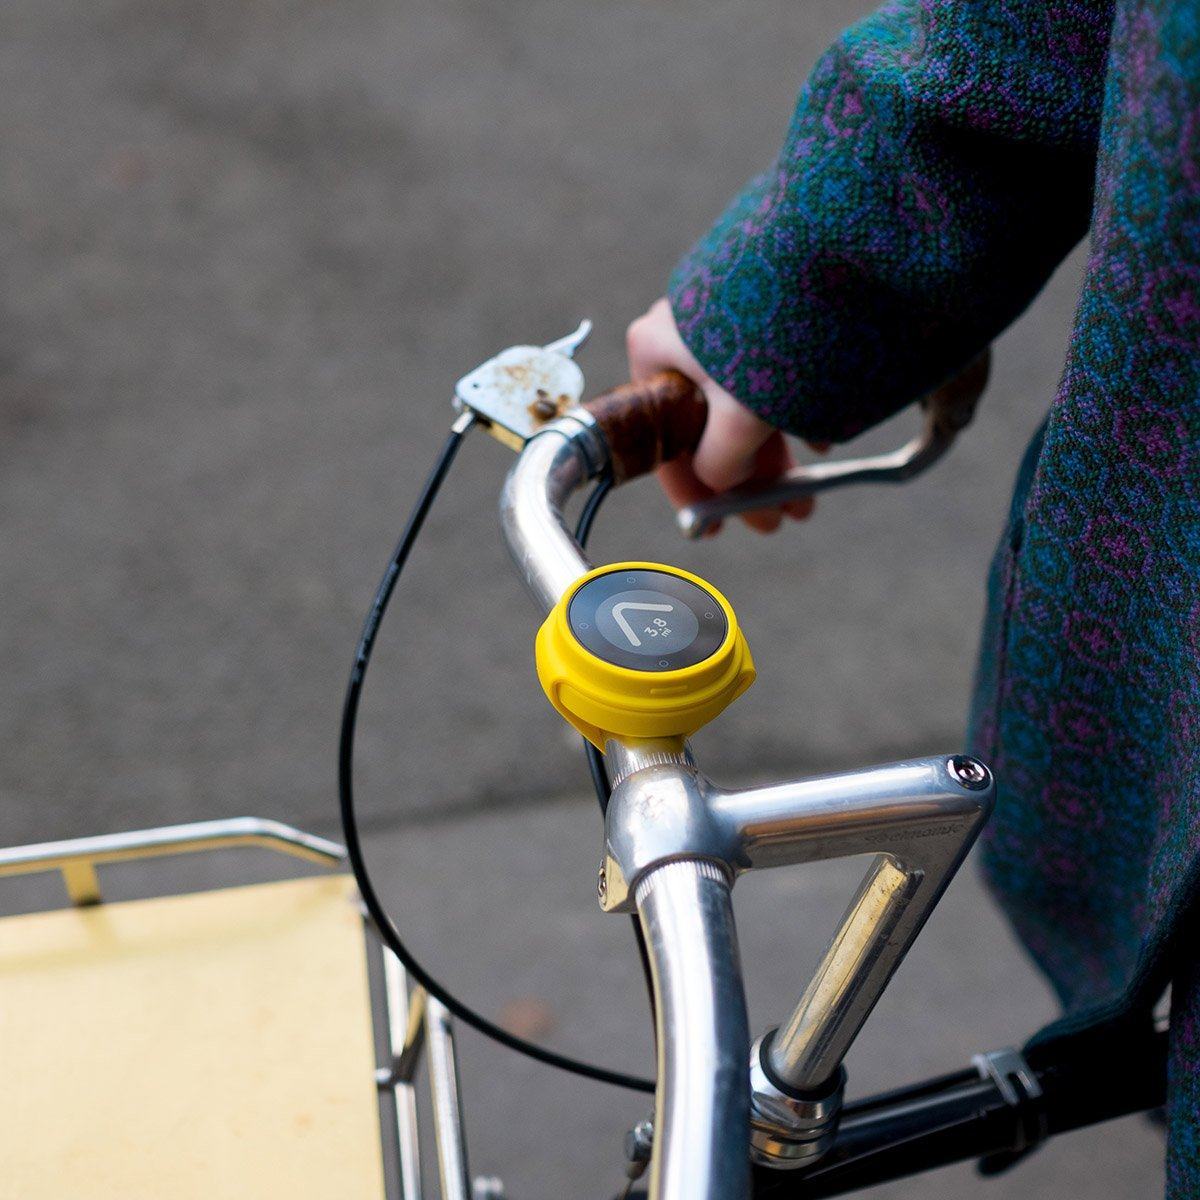  Compteur et Navigation Intelligente simplifiée pour vélo - BEELINE